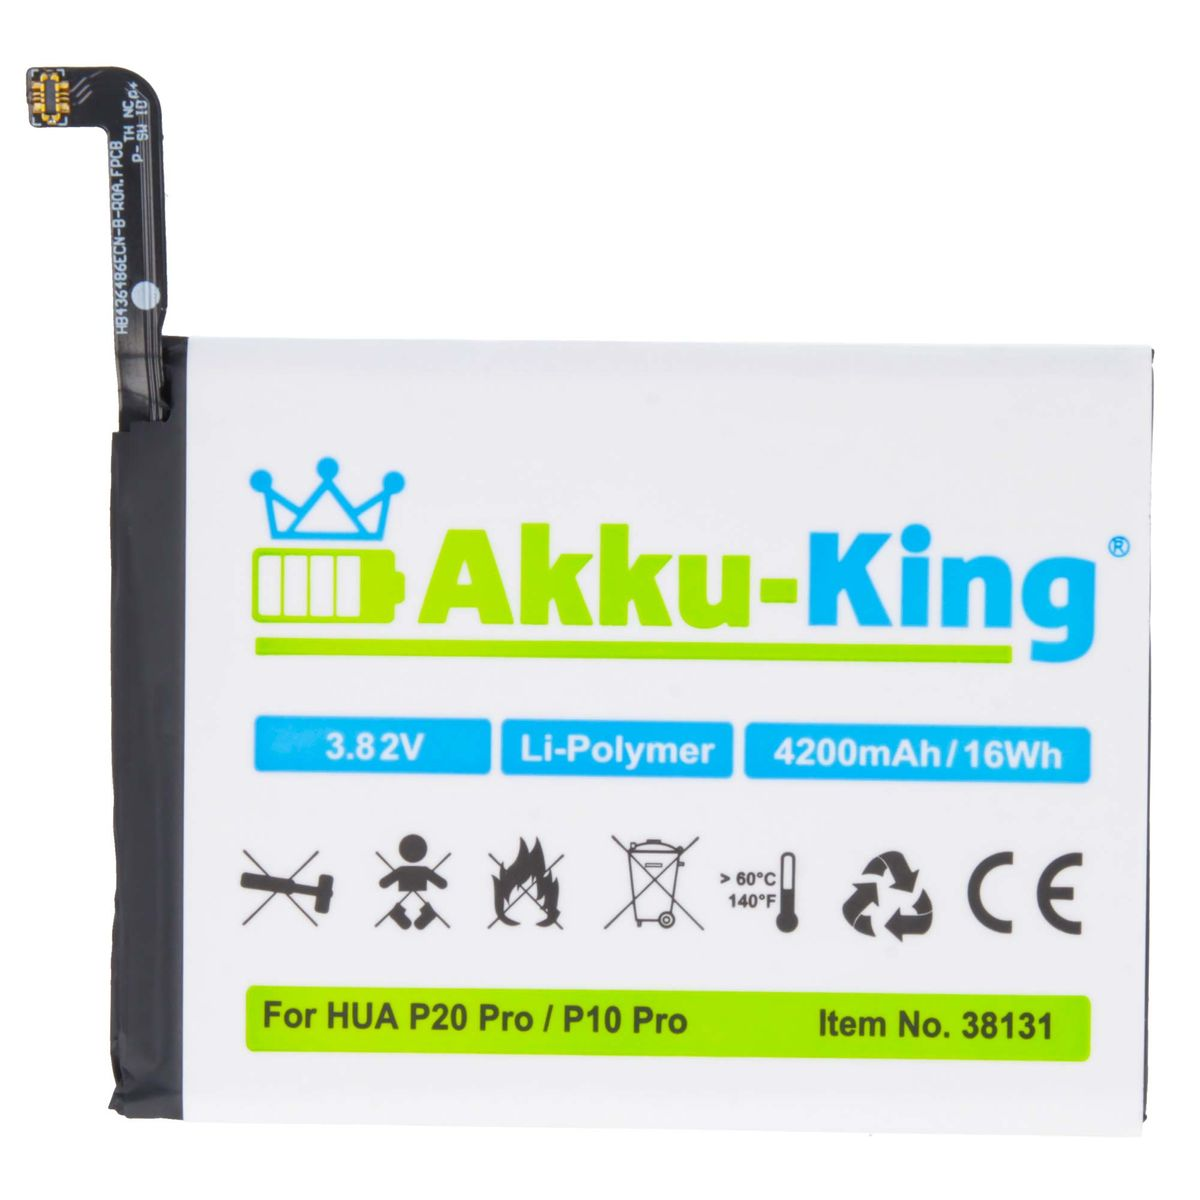 Li-Polymer Handy-Akku, Huawei Akku 4200mAh Volt, HB436486ECW 3.82 kompatibel AKKU-KING mit